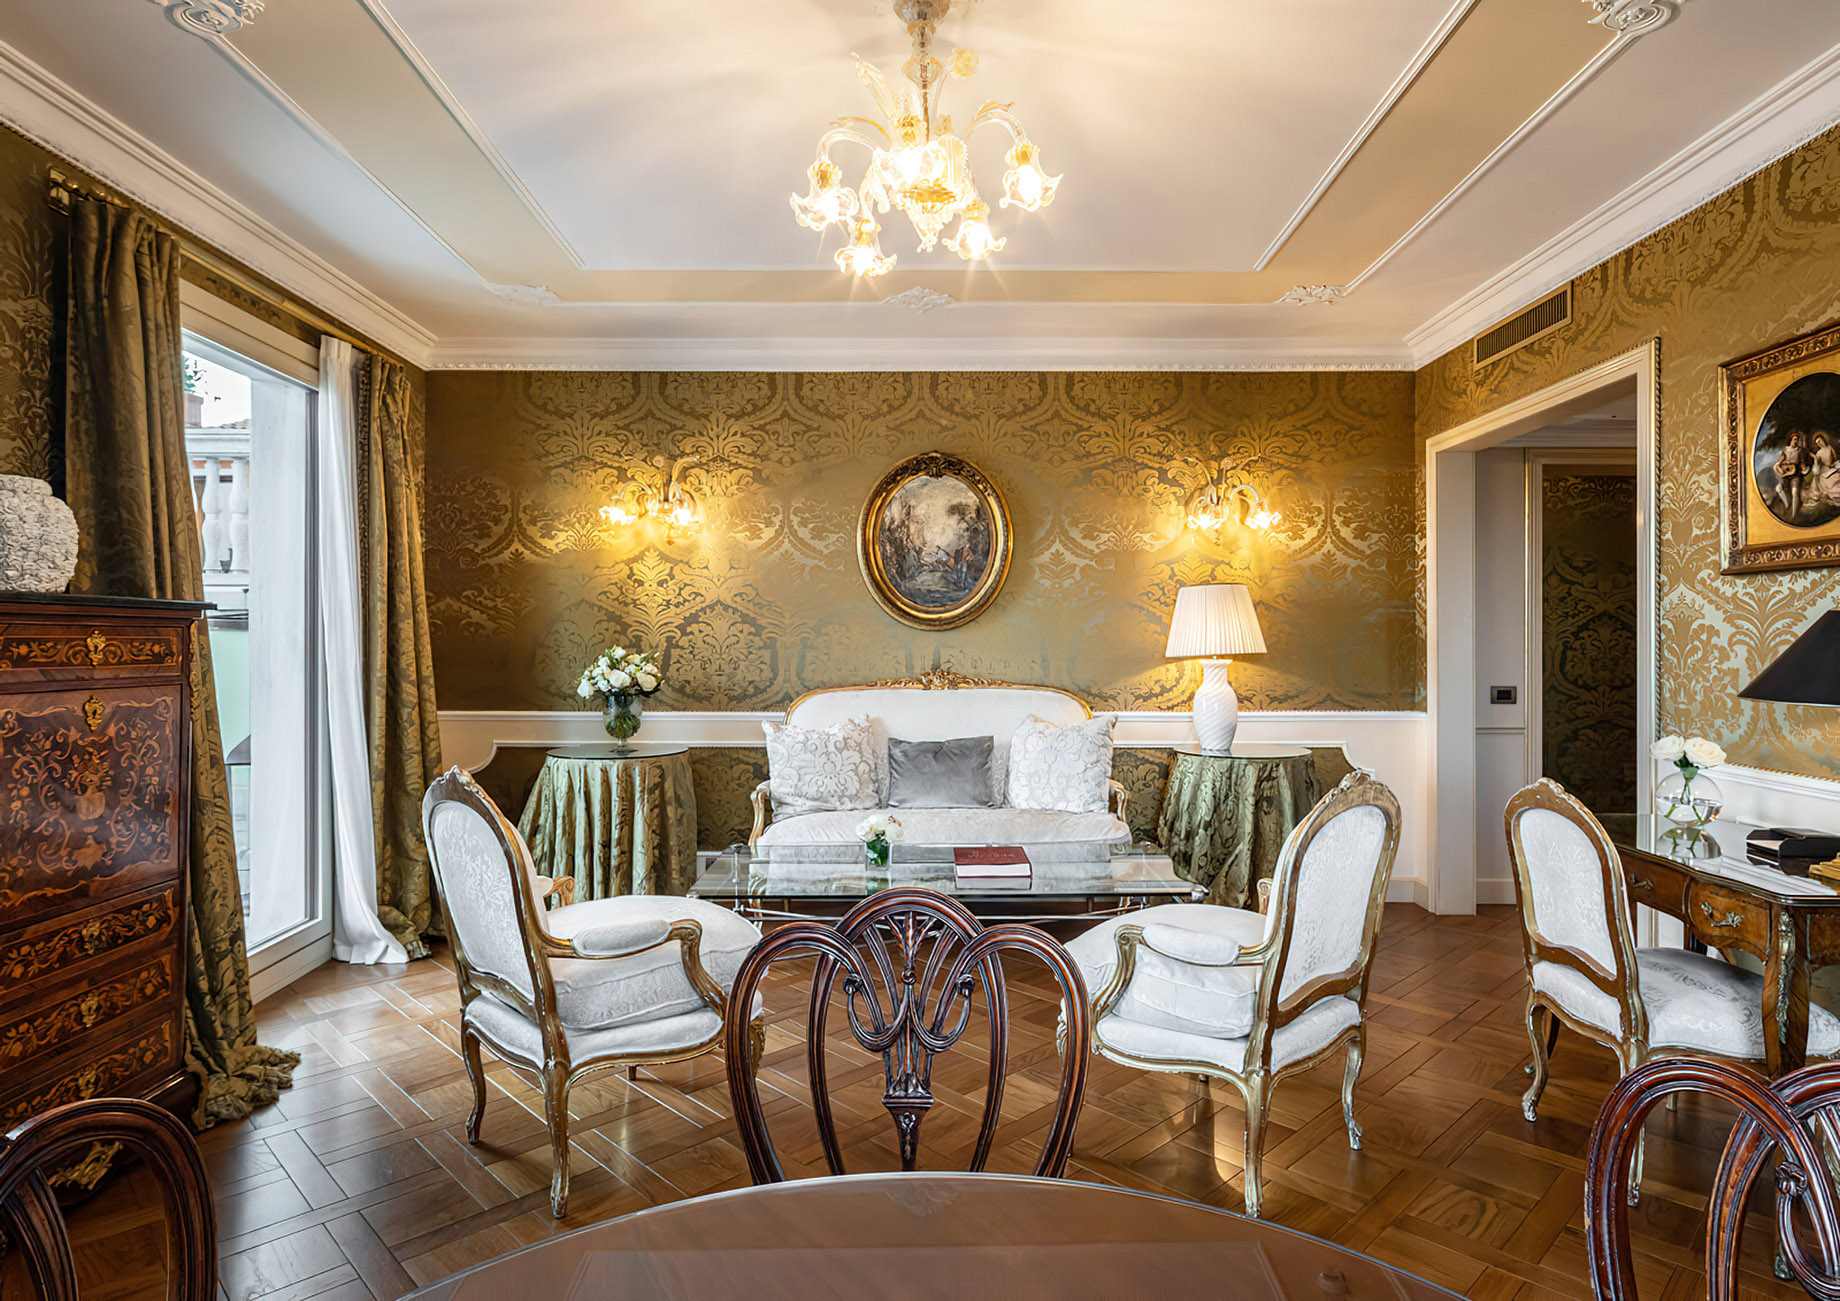 Baglioni Hotel Luna, Venezia – Venice, Italy – Sansovino Family Lagoon View Suite Bedroom